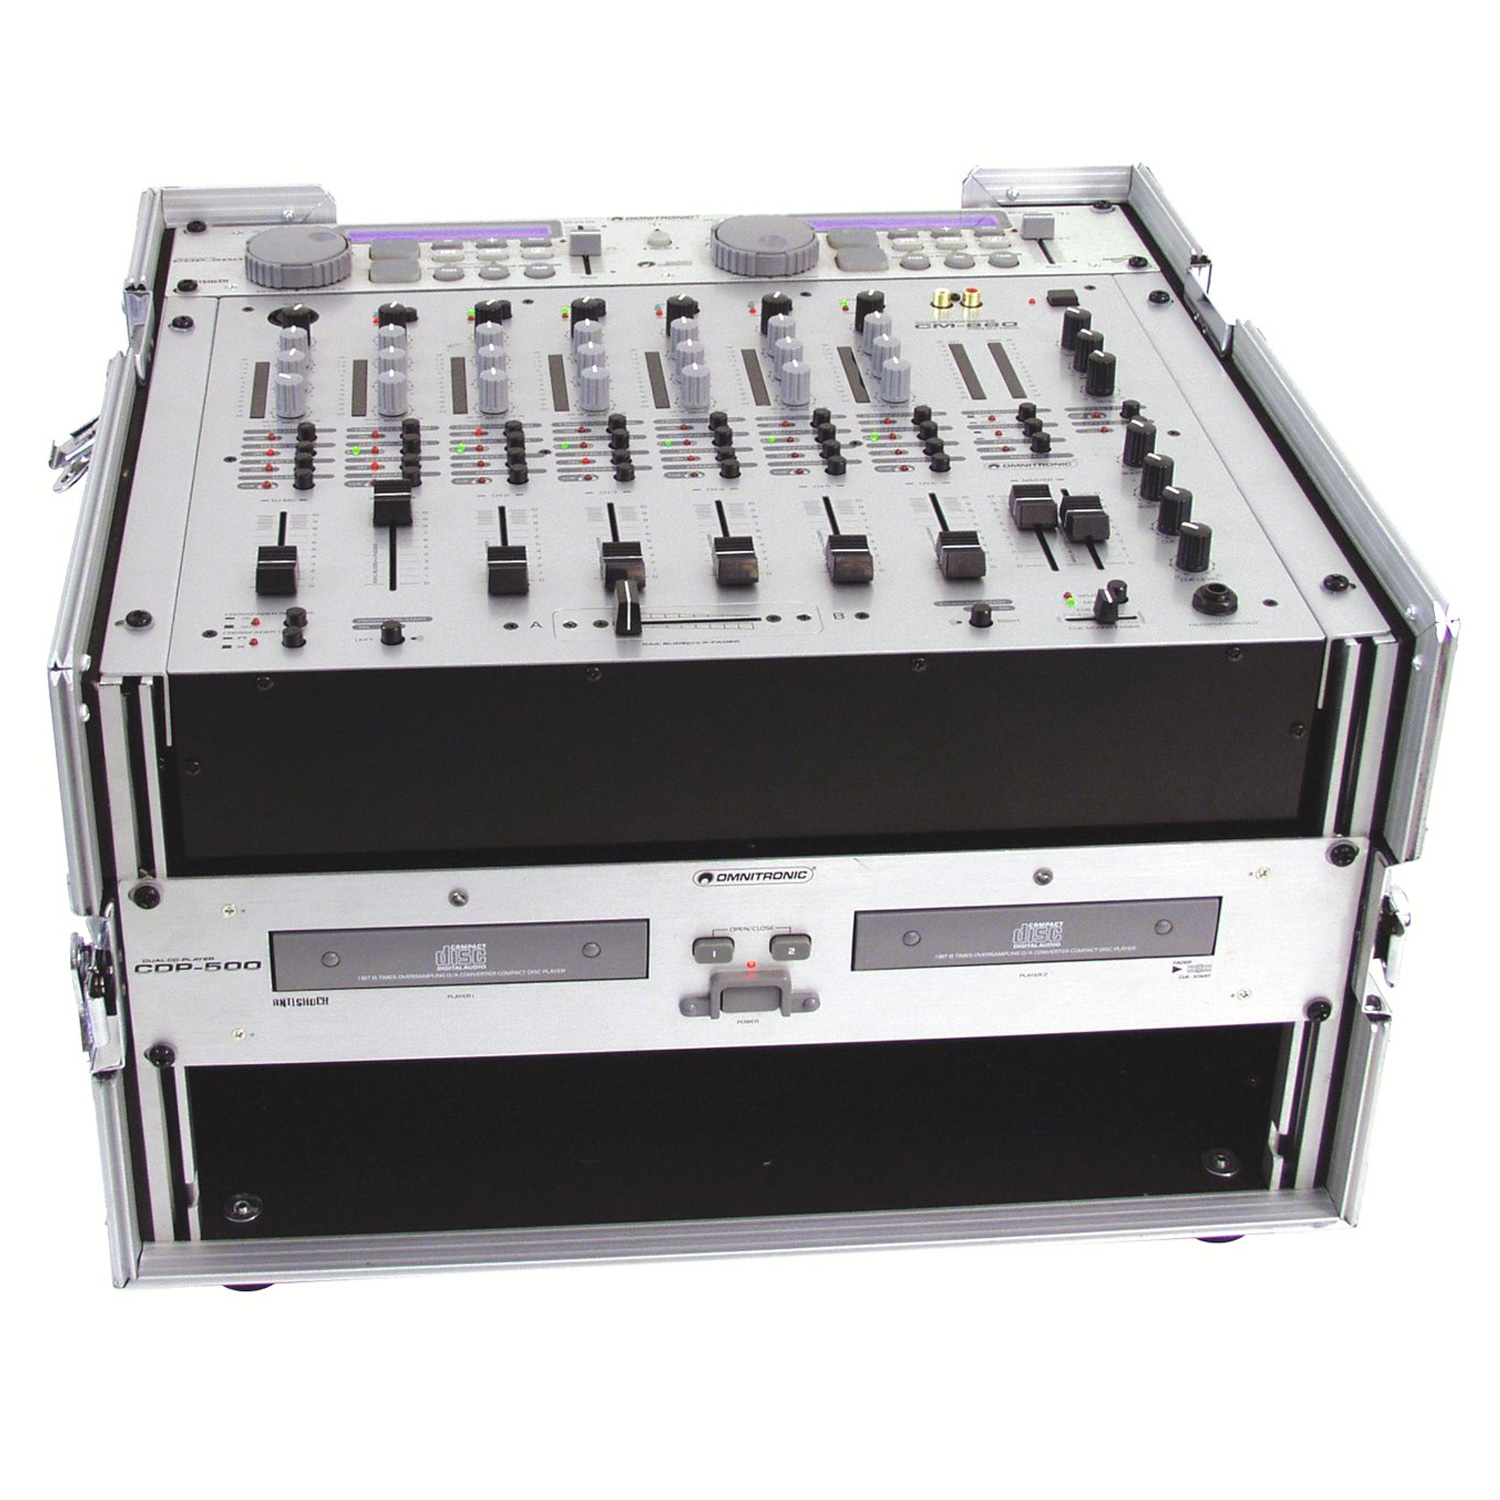 Pultcase für DJ und LJ - Flightcase für 483-mm-Geräte (19")